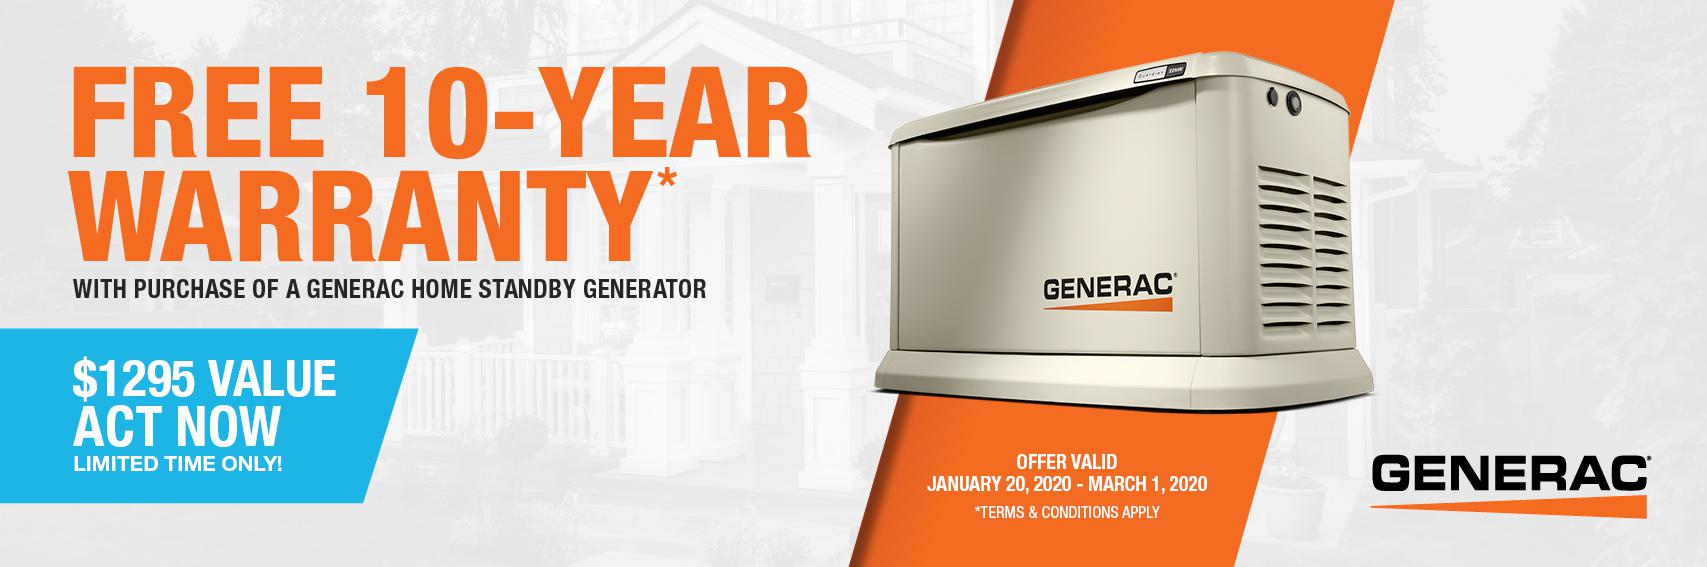 Homestandby Generator Deal | Warranty Offer | Generac Dealer | White Lake, ON